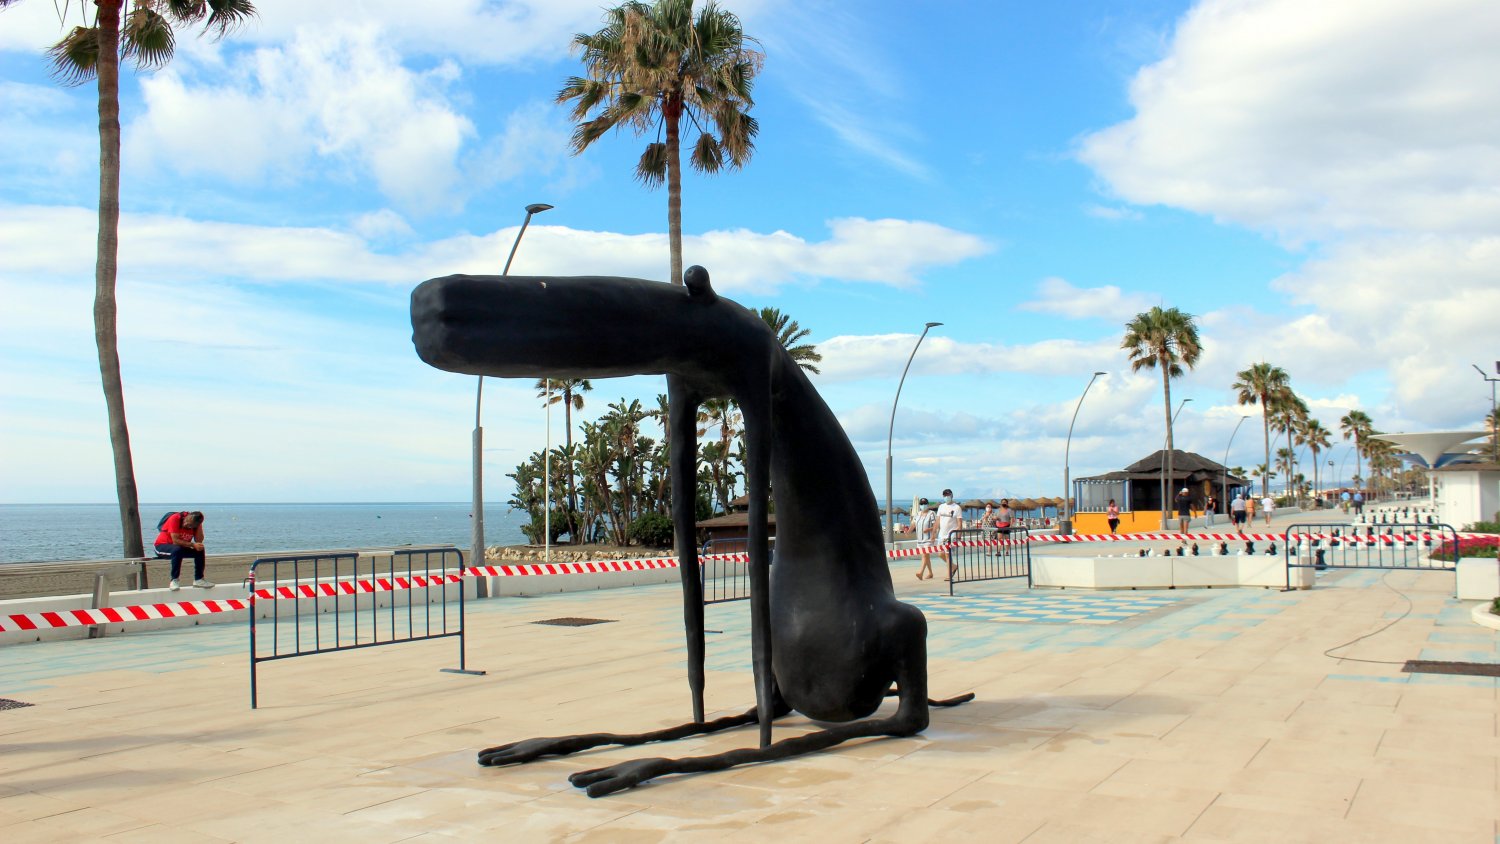 Estepona incorpora al patrimonio de la ciudad una escultura de Rafa Macarrón